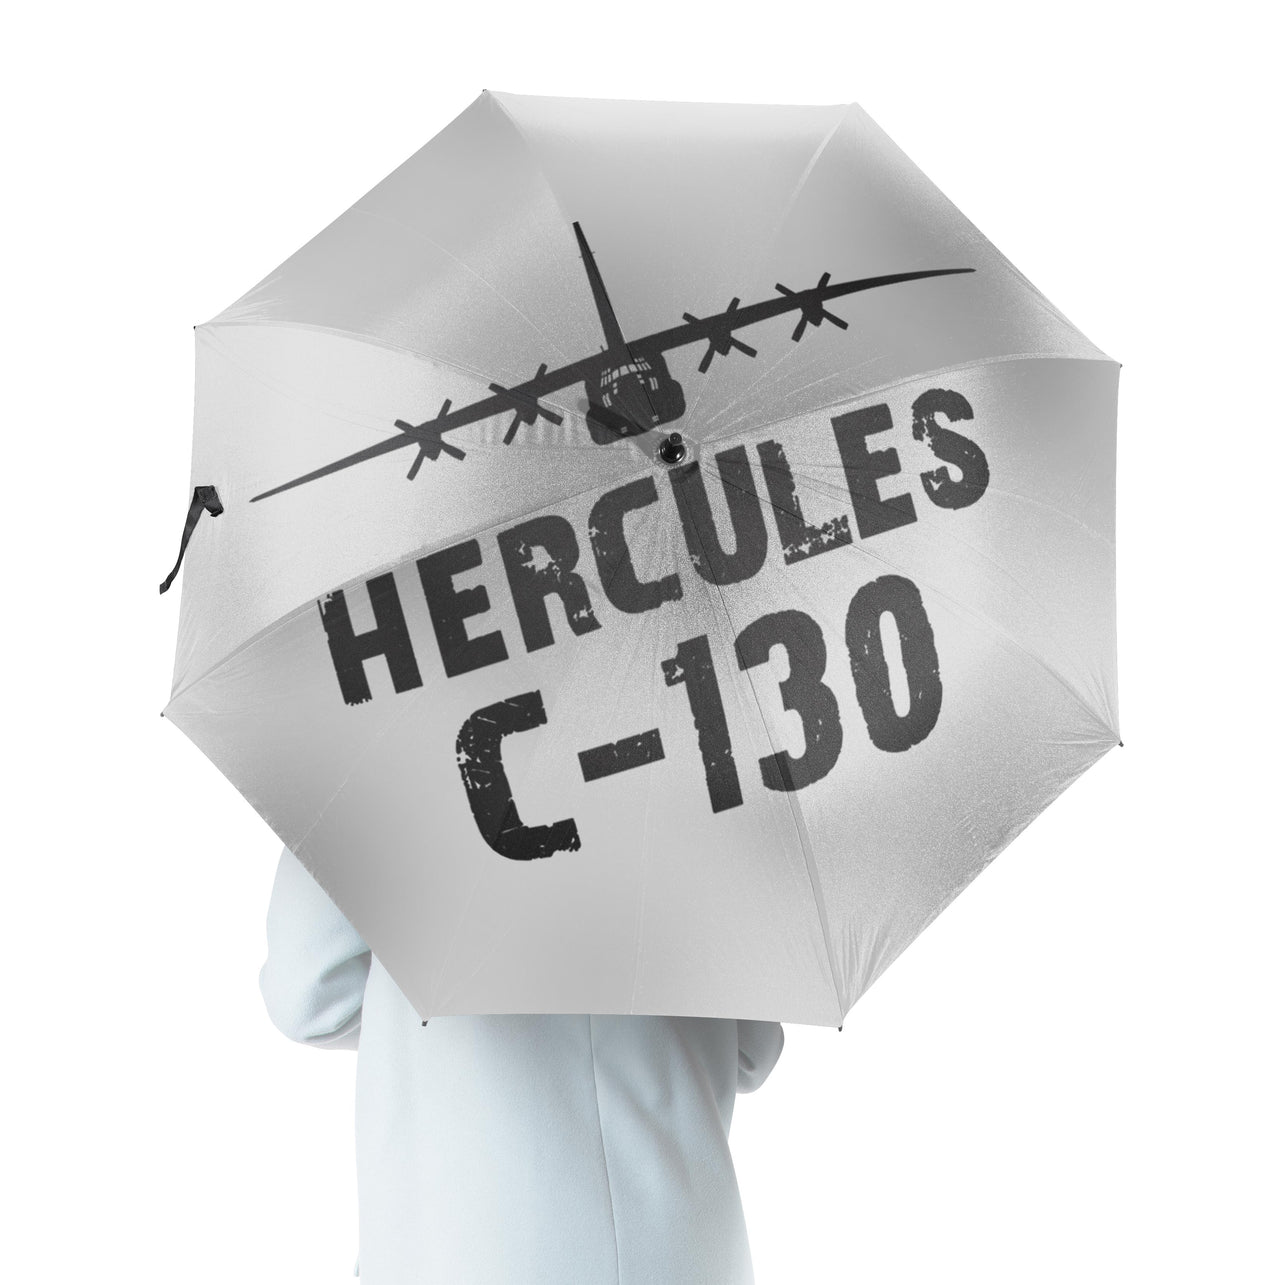 Hercules C-130 & Plane Designed Umbrella